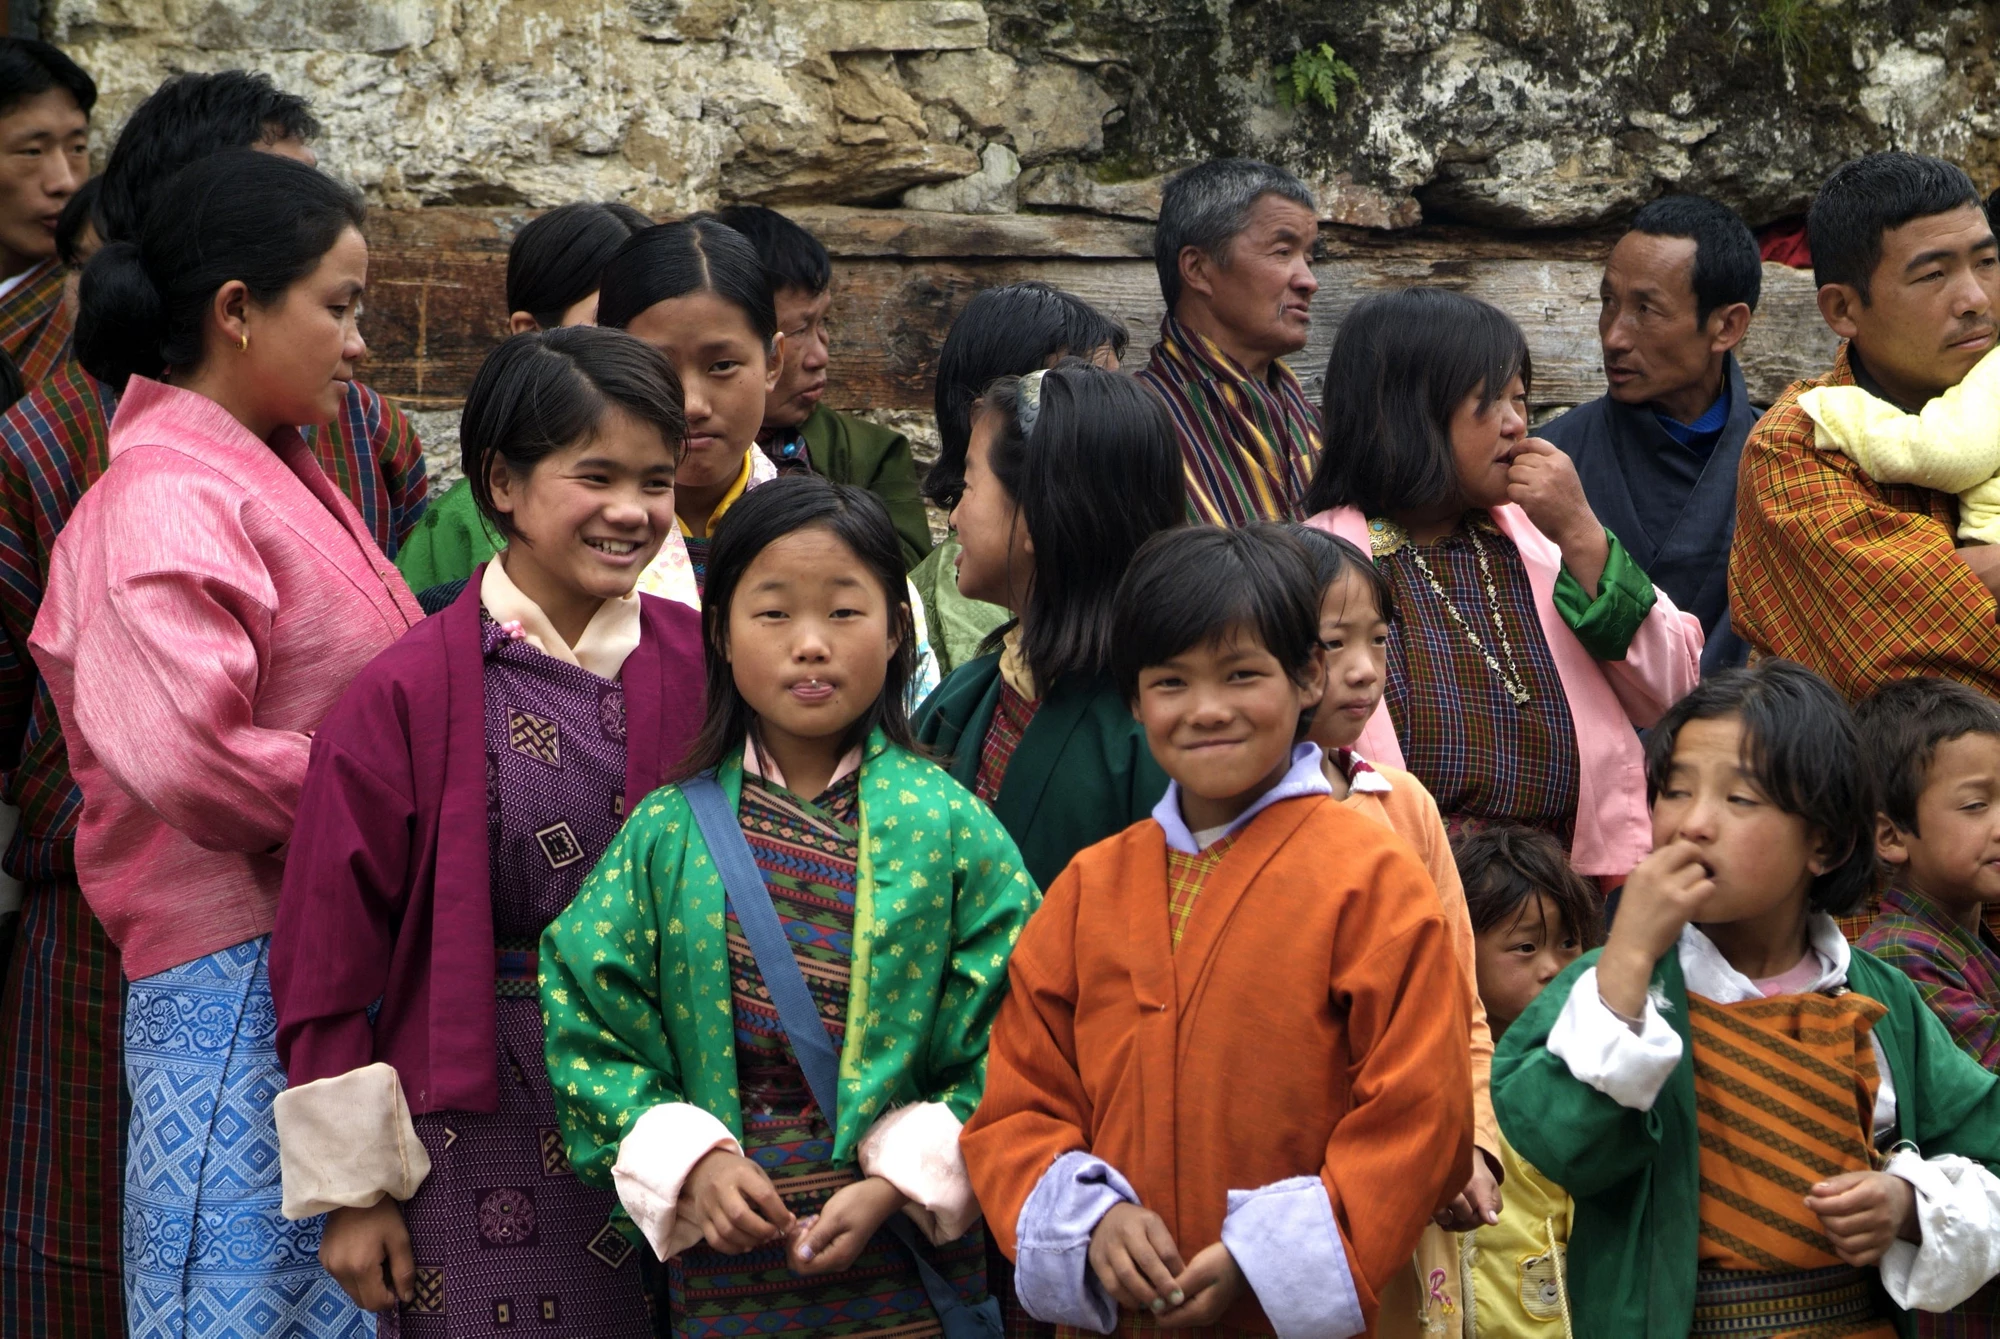 Bhutan children attend an event. Photo: Shutter Stock